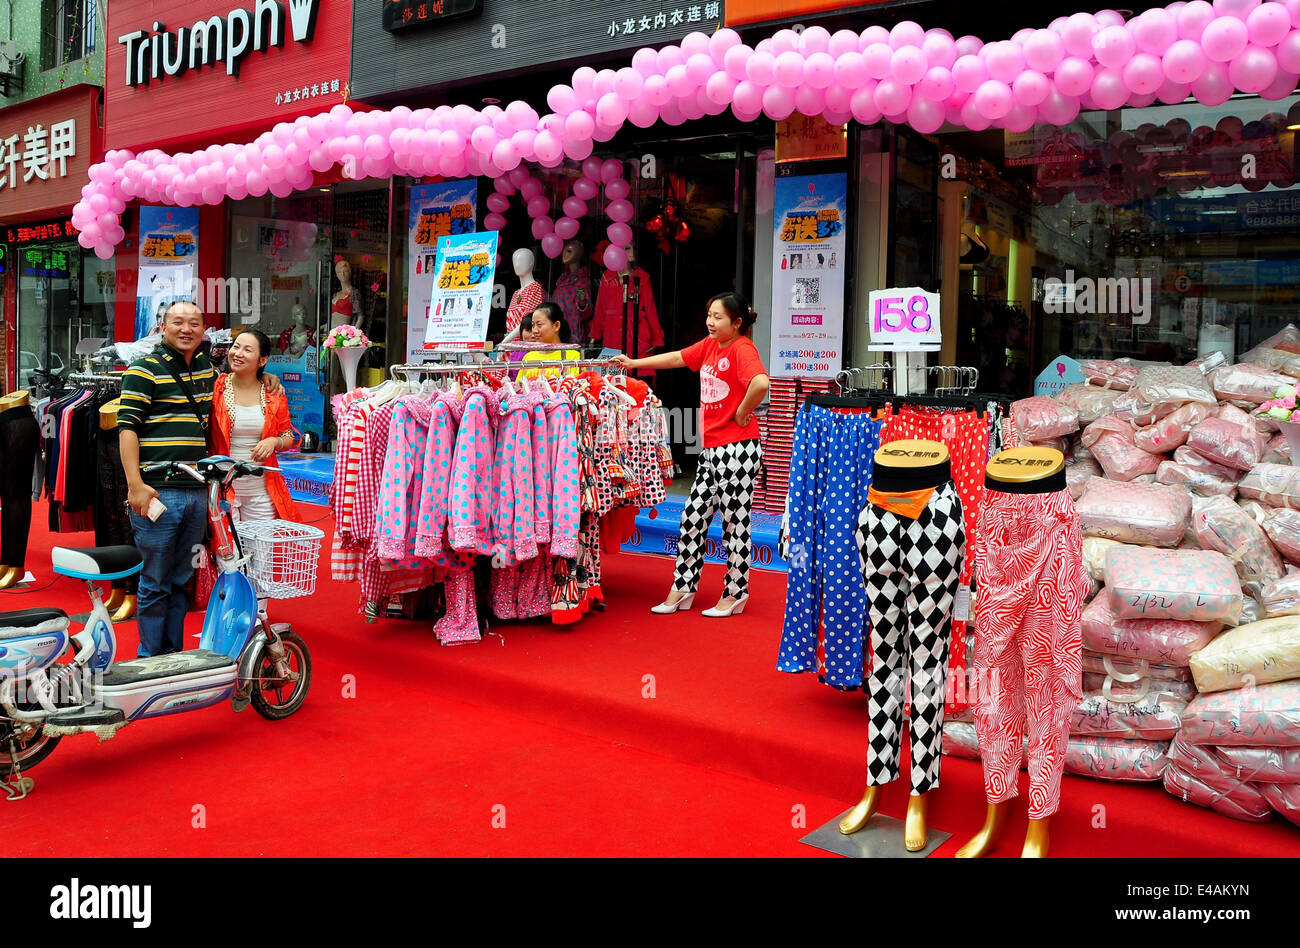 PENGZHOU, CINA: ghirlande di palloncini rosa decorare un albergo di nuova apertura negozio di abbigliamento Foto Stock